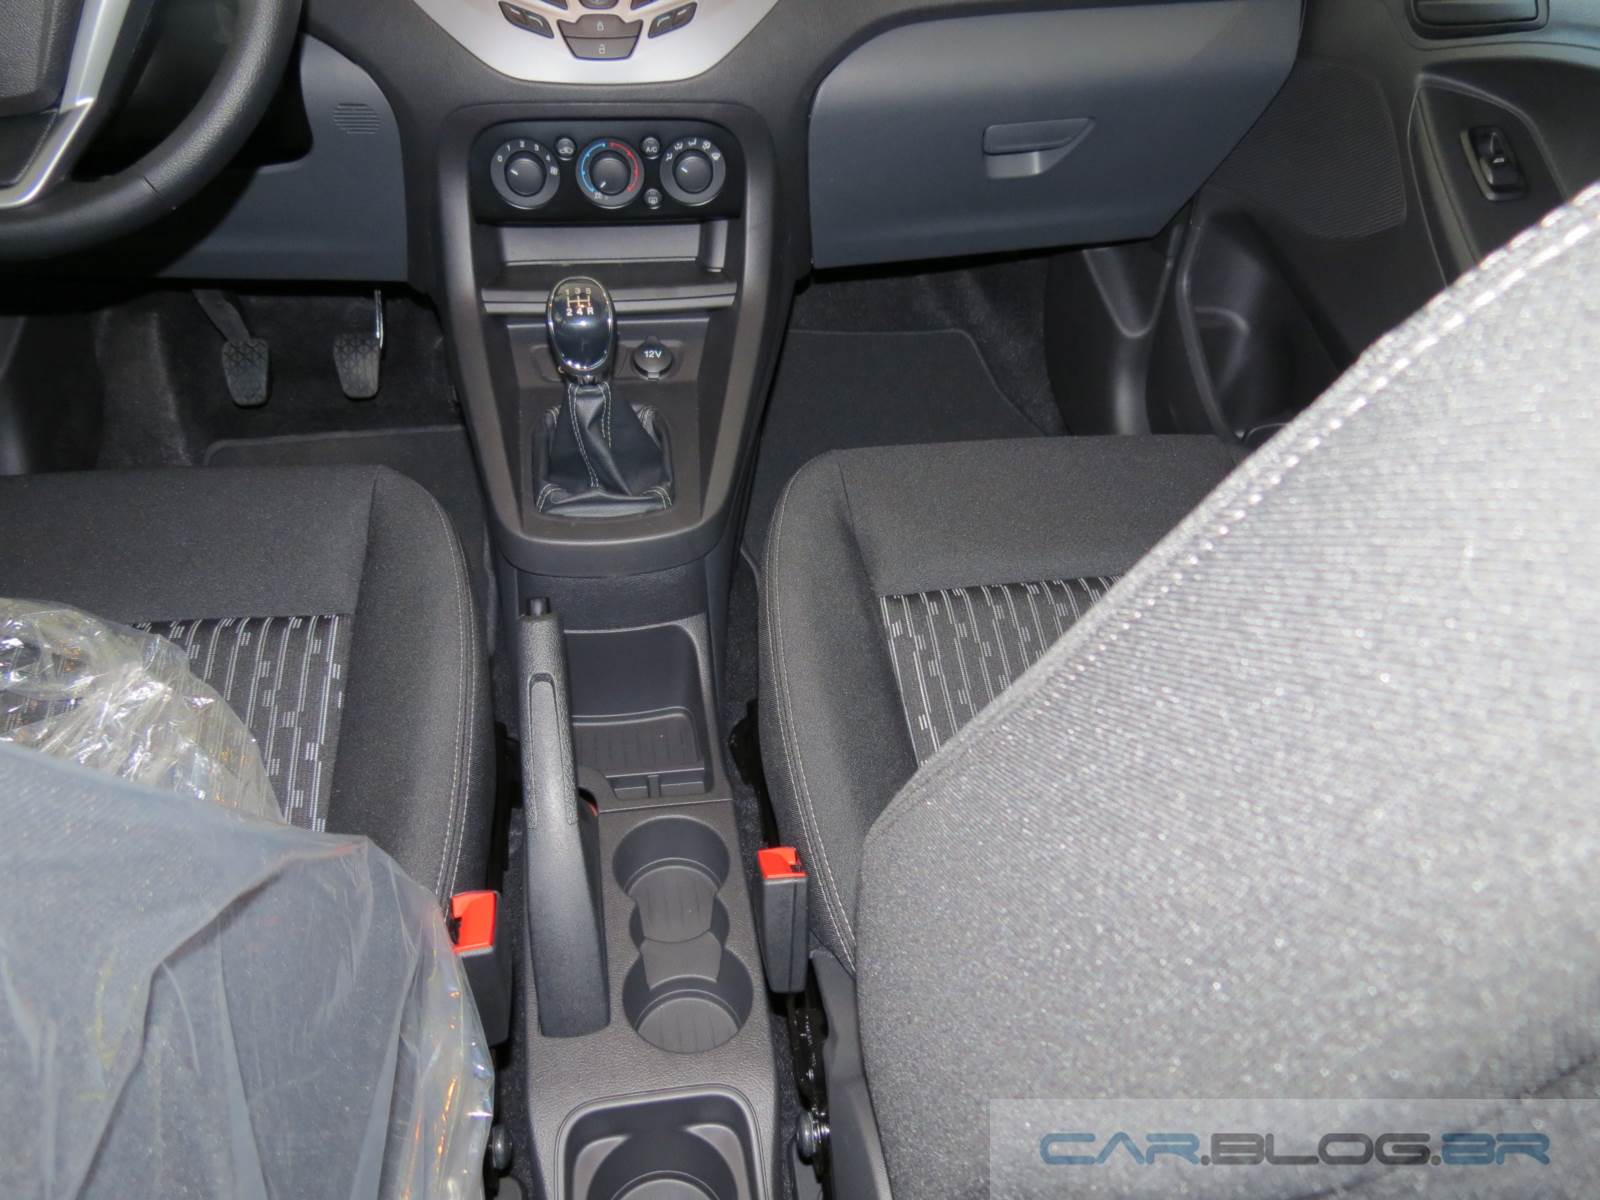 Novo Ford KA 2015 - interior - porta-objetos